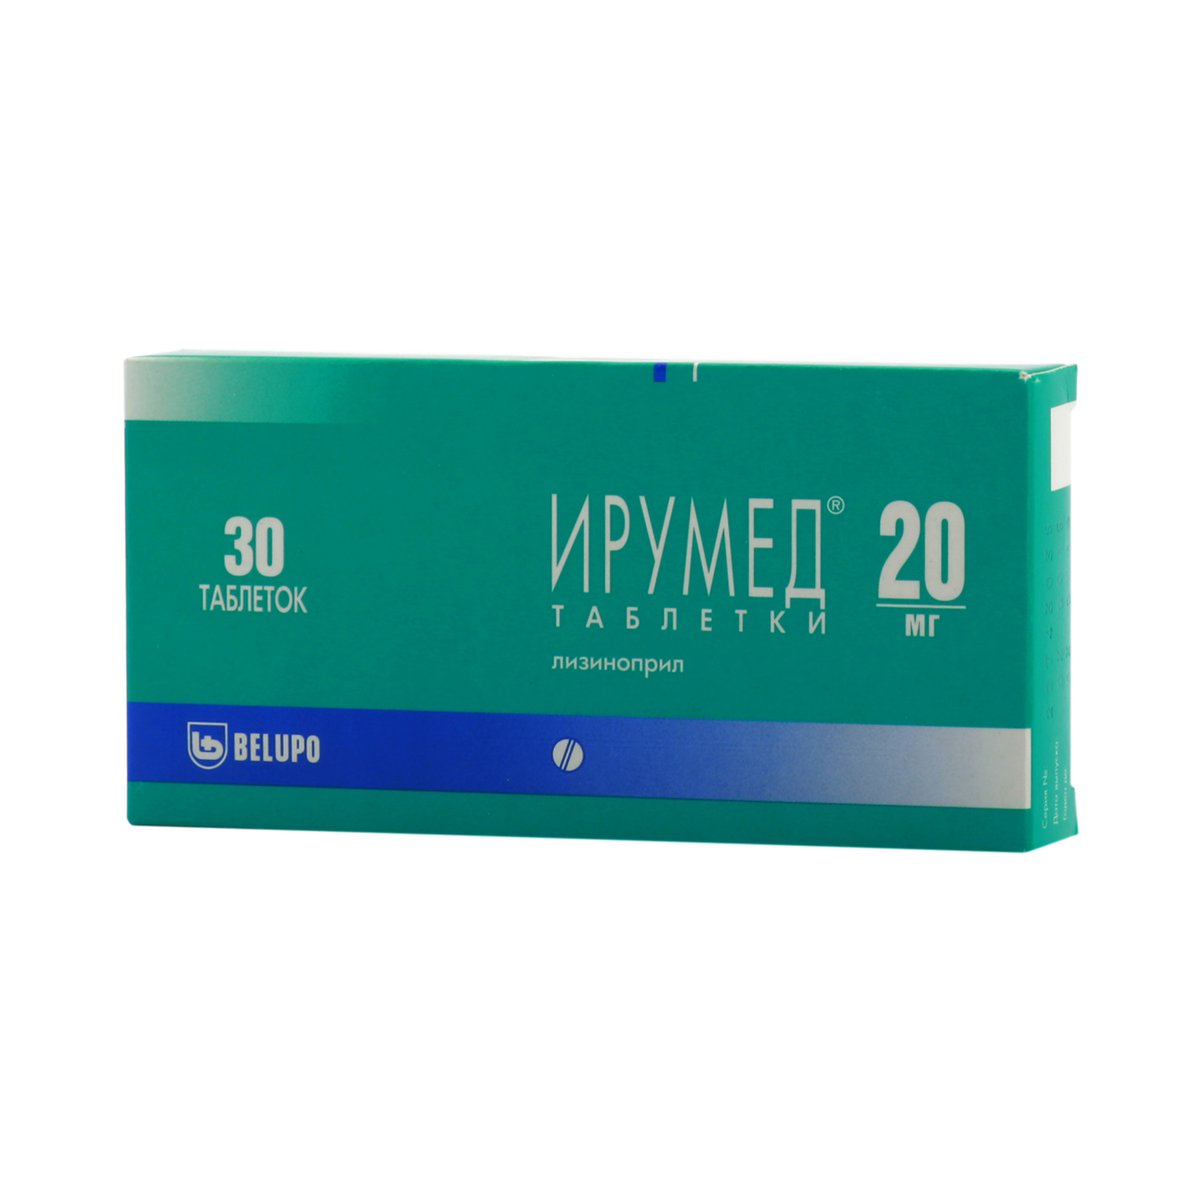 Ирумед (таблетки, 30 шт, 20 мг) - цена,  онлайн  .